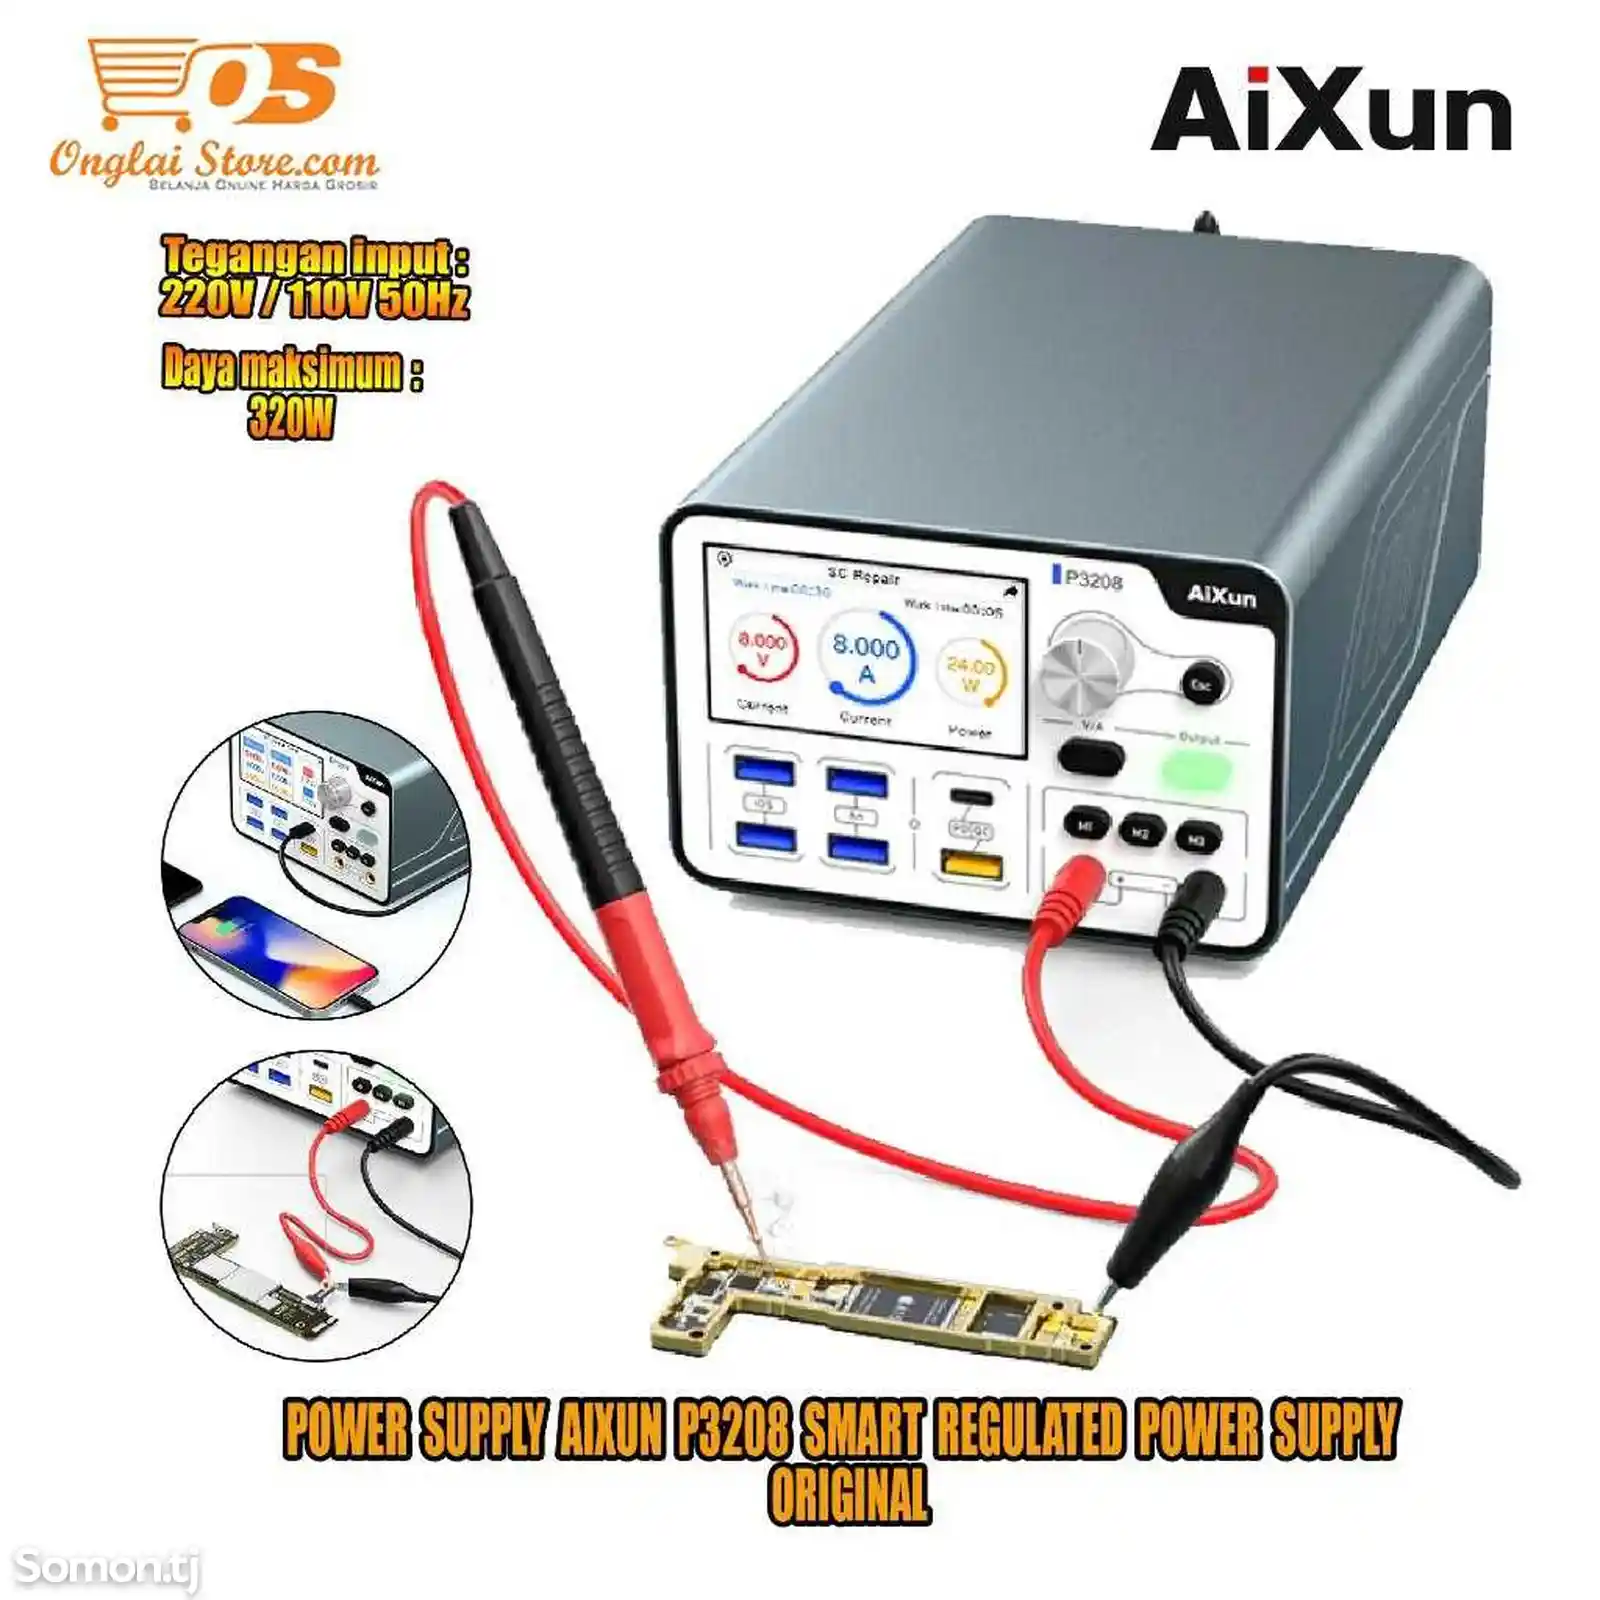 Внешний аккумулятор aixun p3208 32v 8a-6